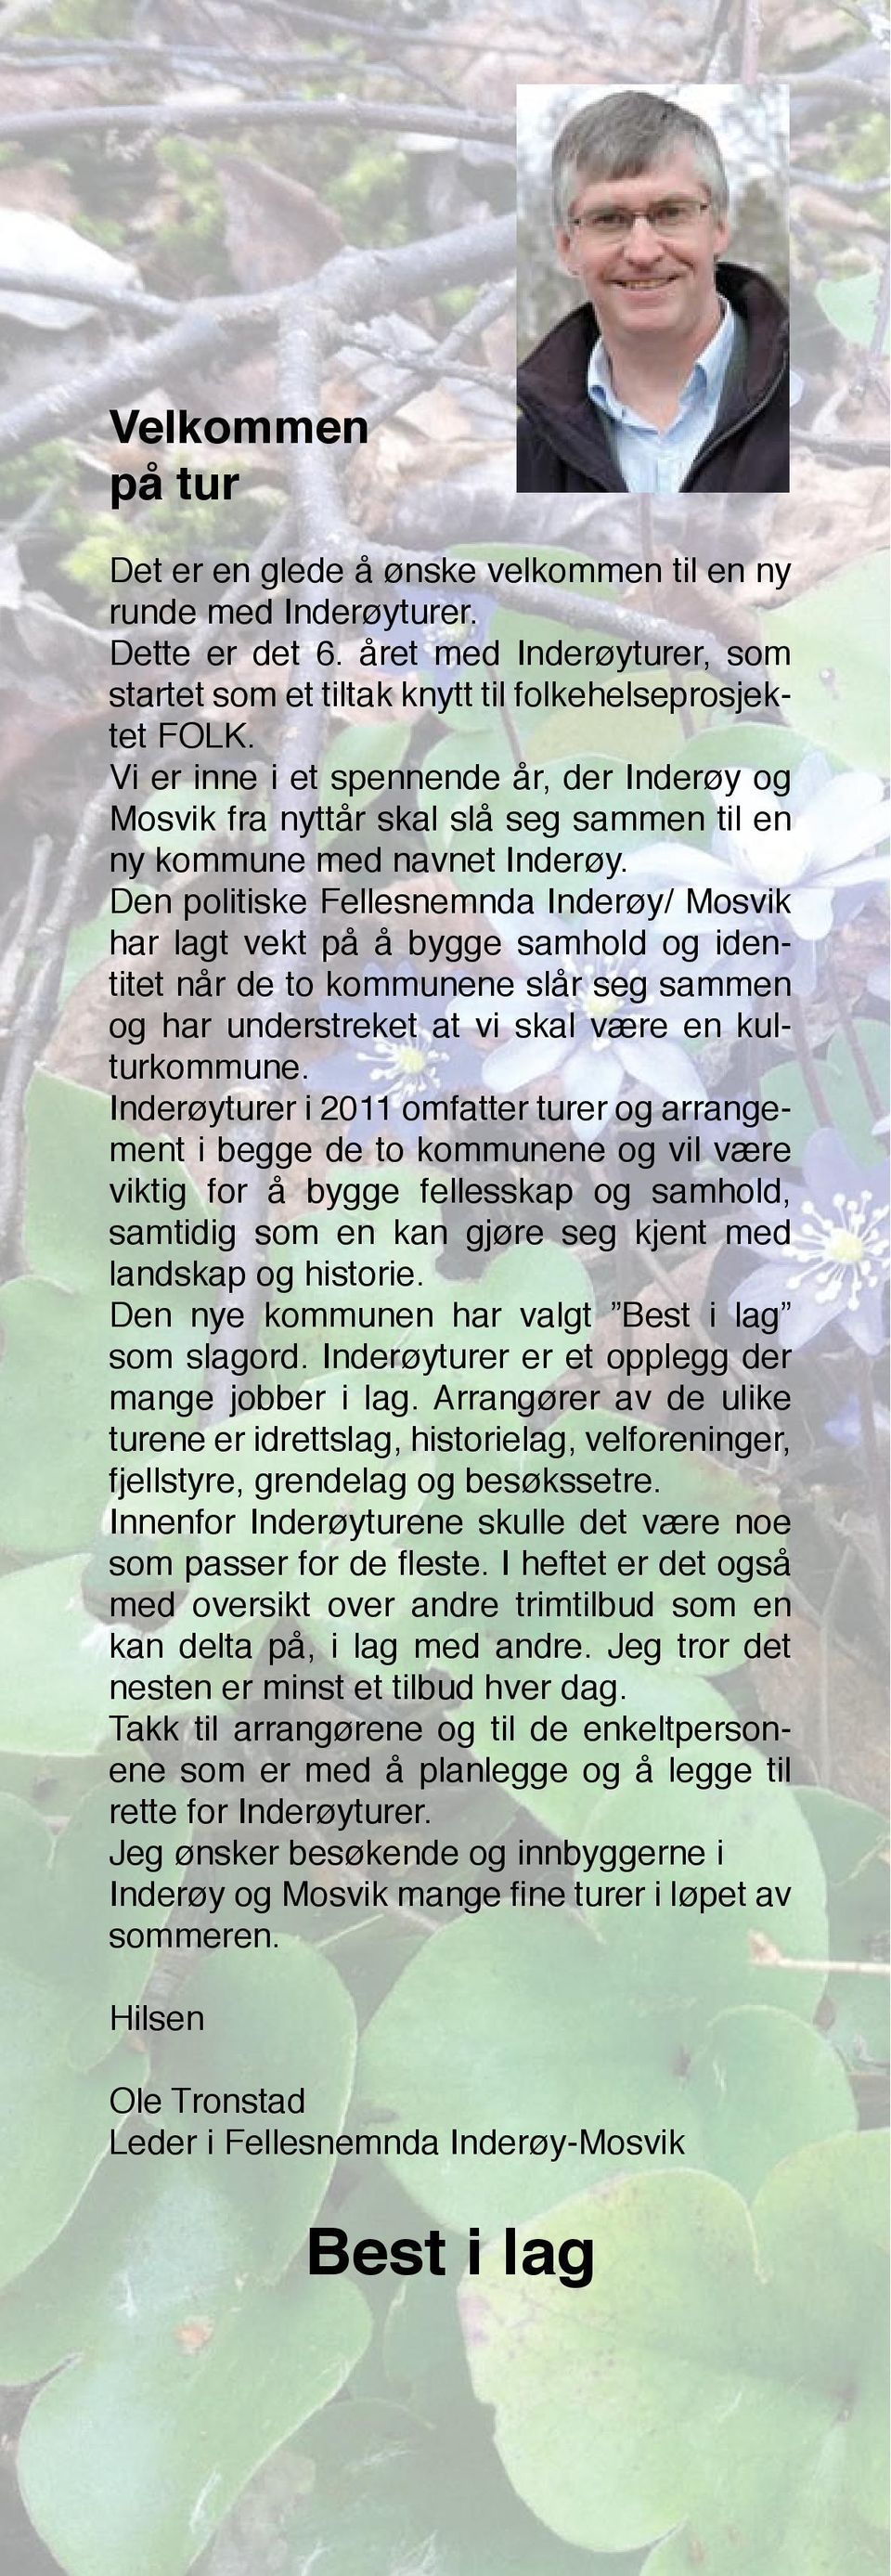 Den politiske Fellesnemnda Inderøy/ Mosvik har lagt vekt på å bygge samhold og identitet når de to kommunene slår seg sammen og har understreket at vi skal være en kulturkommune.